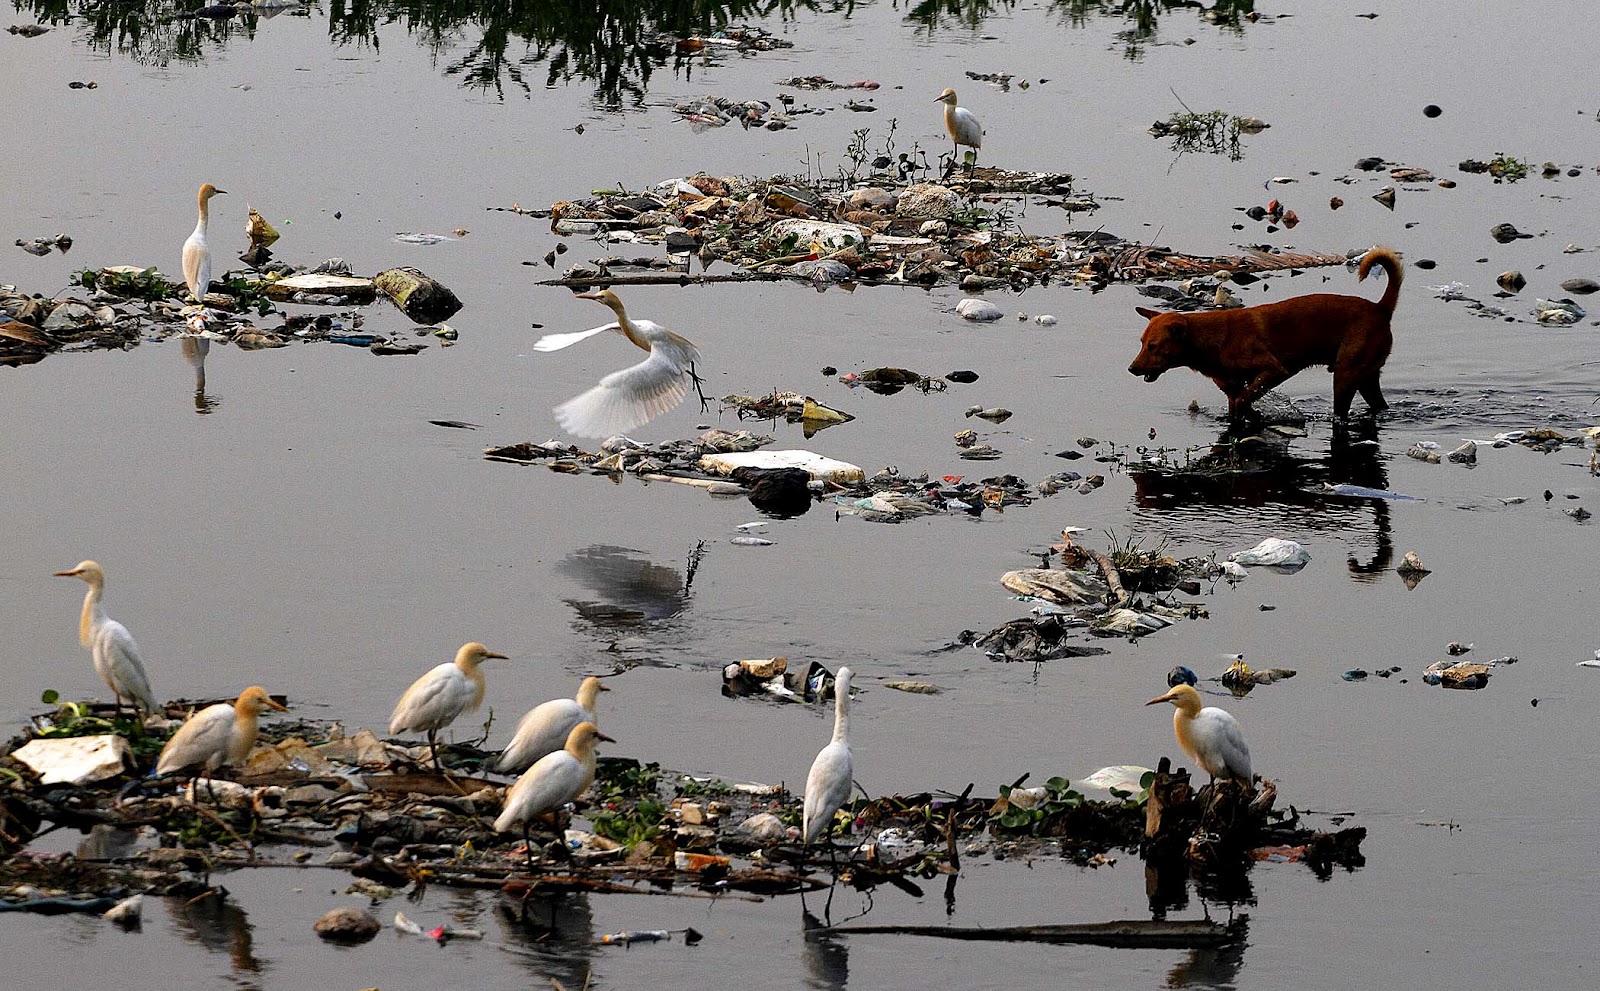 Влияние рек на окружающую среду. Сарно Италия река. Река Сарно загрязнение. Сарно река грязная. Птицы в грязной воде.